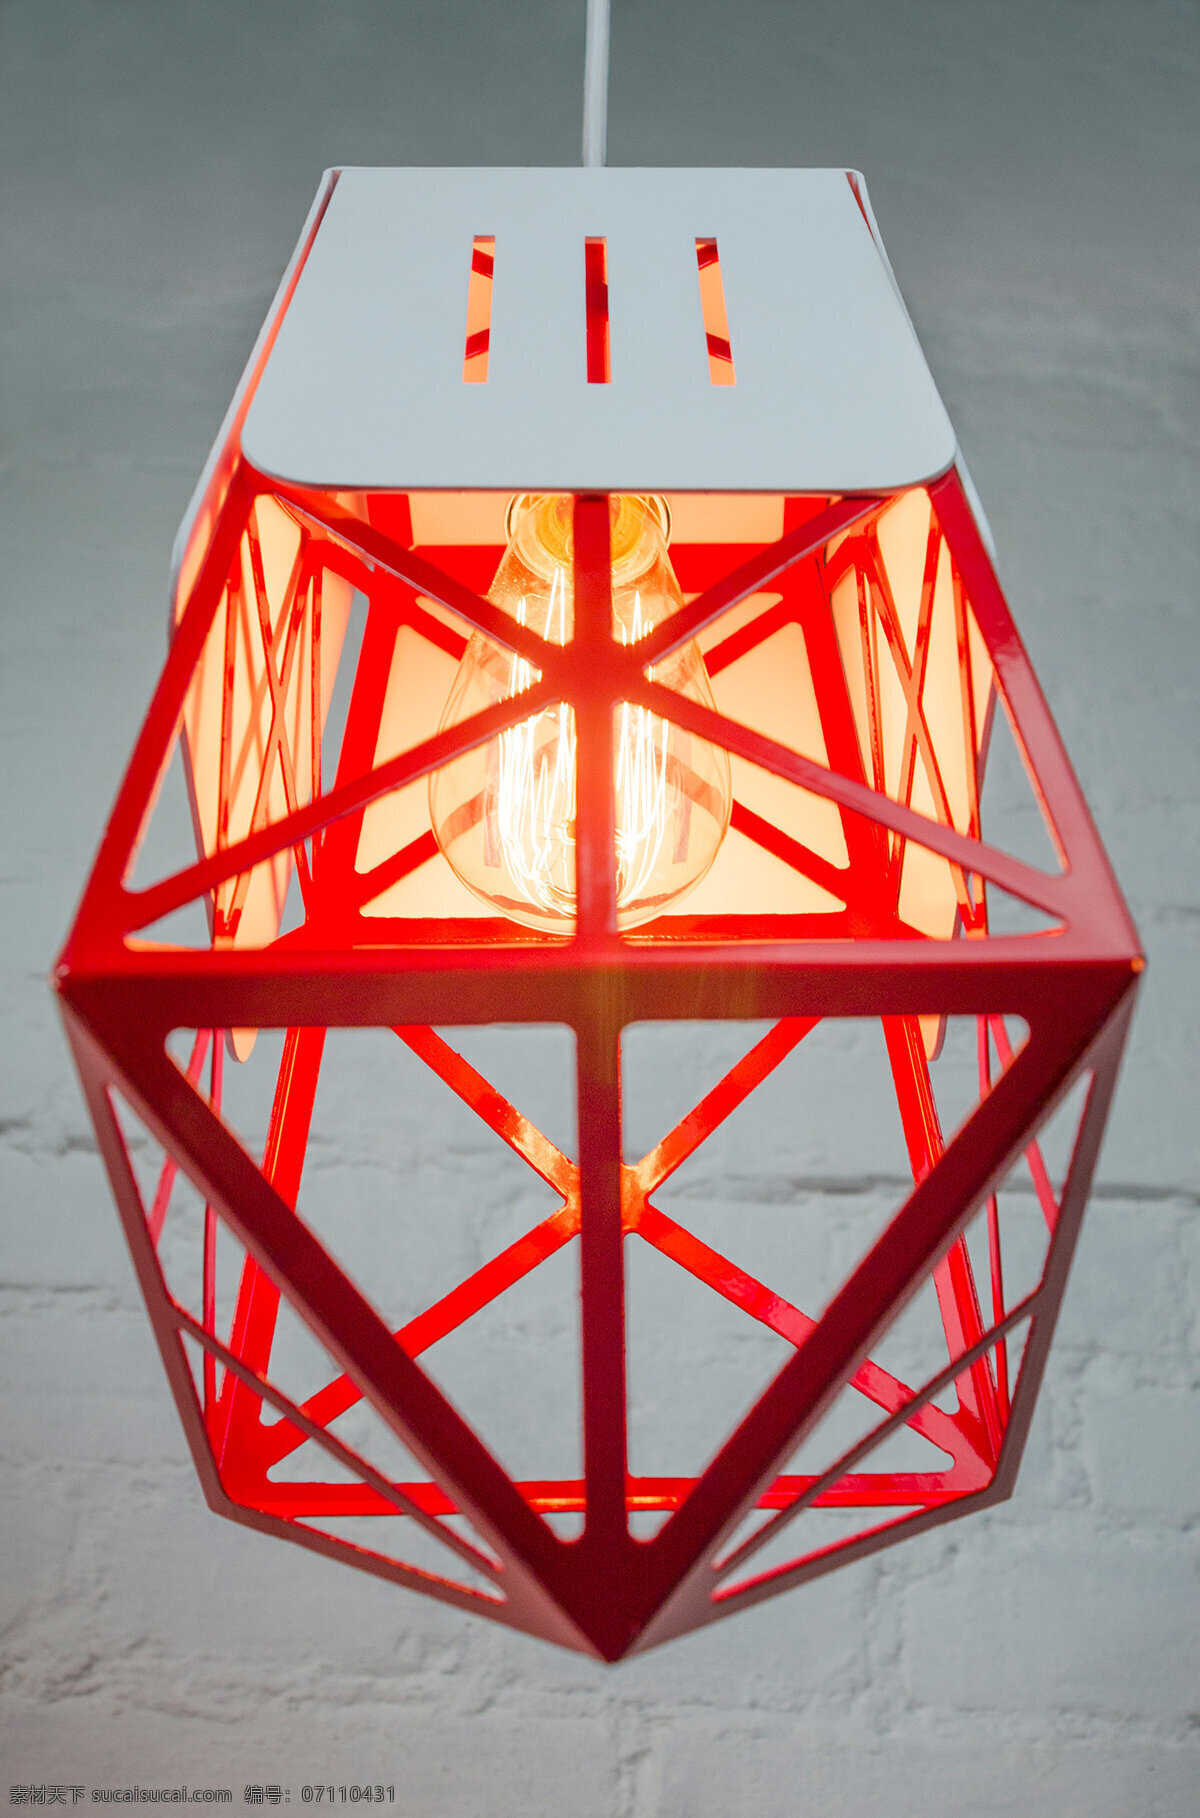 红色 性感 线条 立体 灯具 产品 3d打印 灯泡 现代感